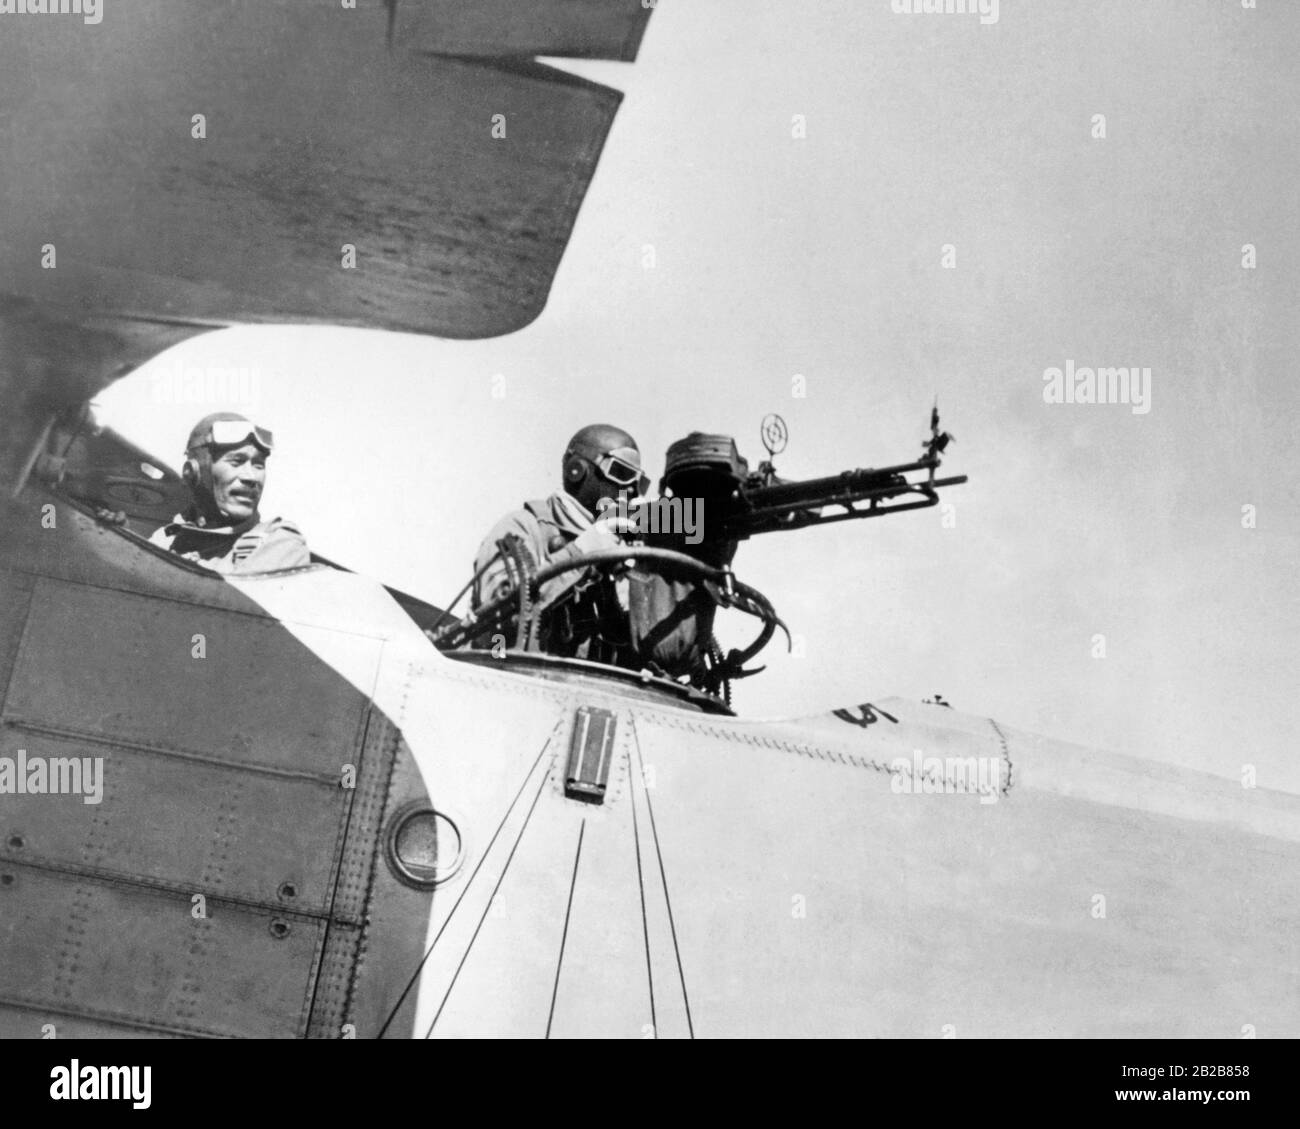 Un bombardiere giapponese è pronto su un campo aereo prima di un attacco aereo contro le truppe cinesi. Il pilota si rivolge al suo gunner mentre spara un volo dalla sua mitragliatrice. Foto Stock